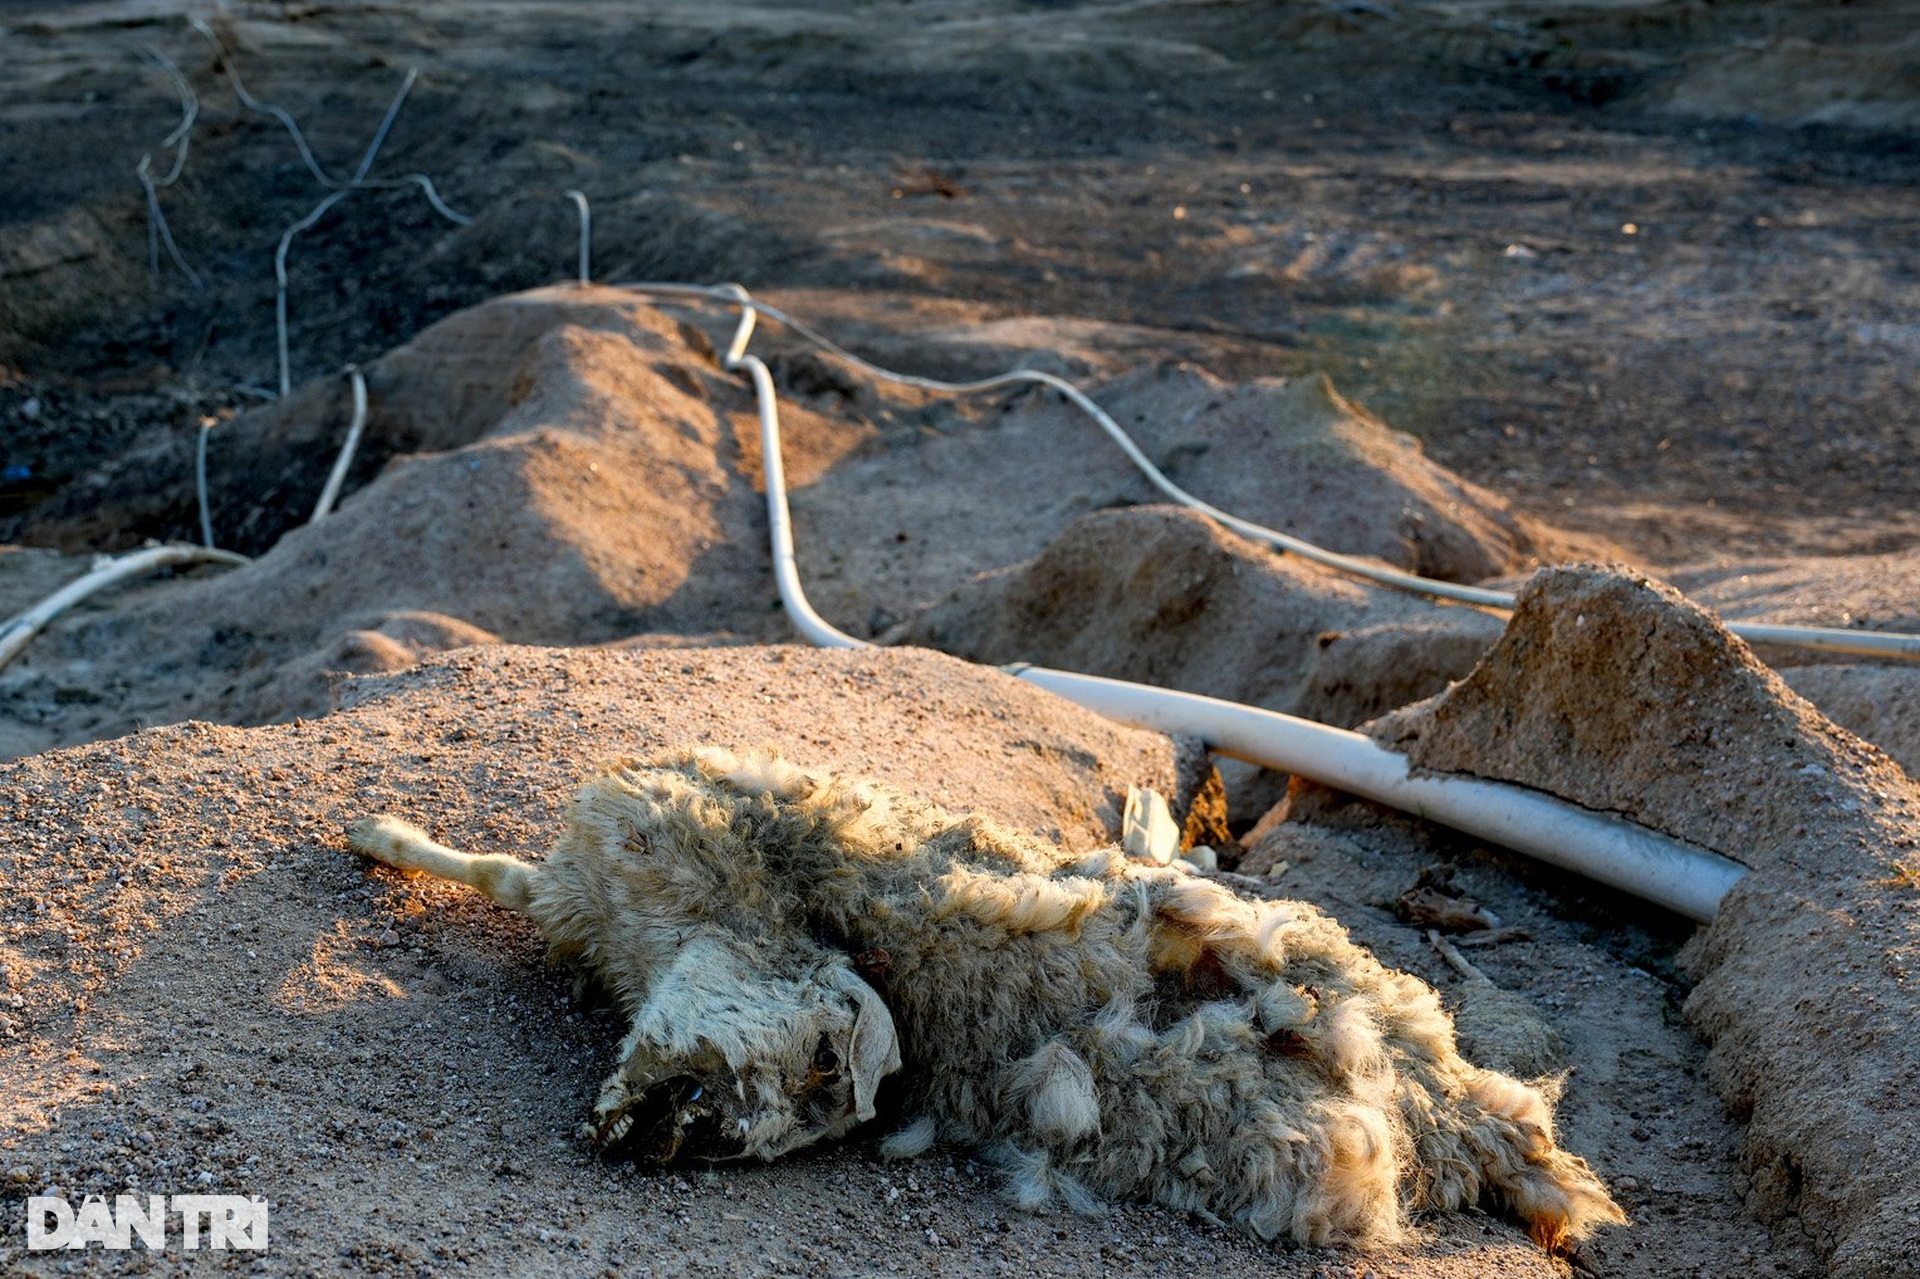 Cừu gục chết trên đường do hạn hán kéo dài ở miền Trung - 1